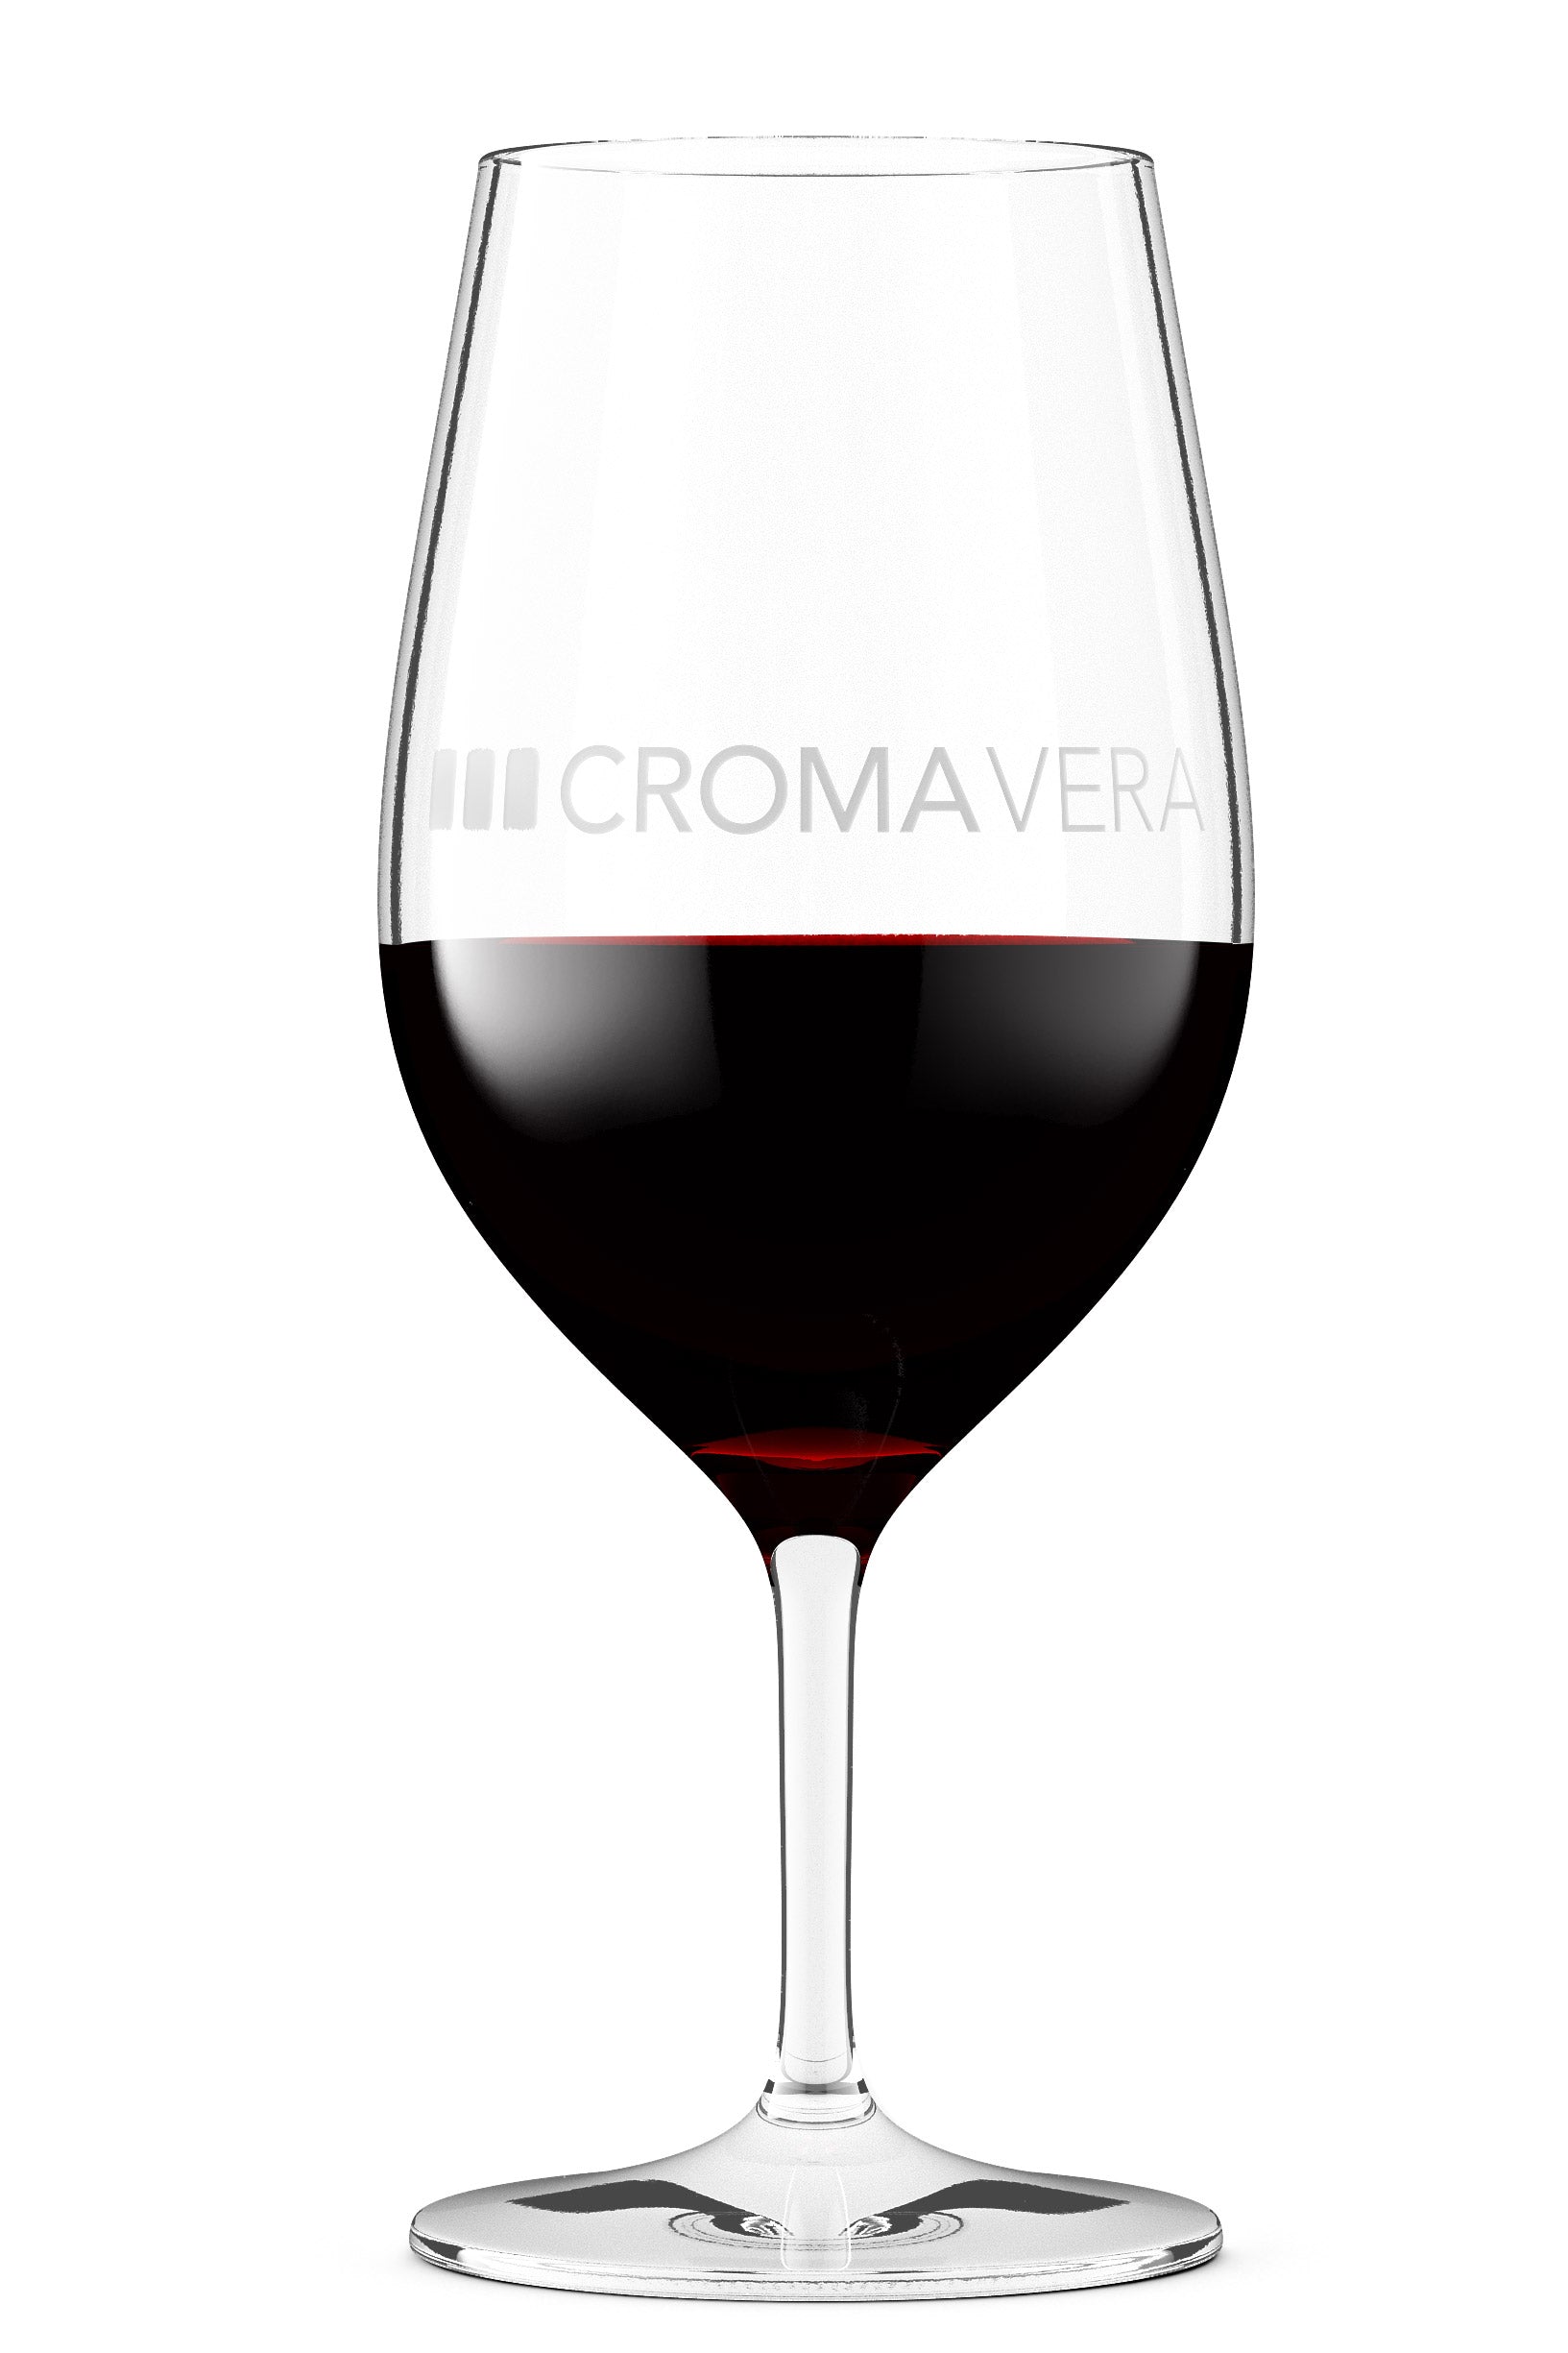 A glass of  Croma Vera Cabernet Sauvignon red wine